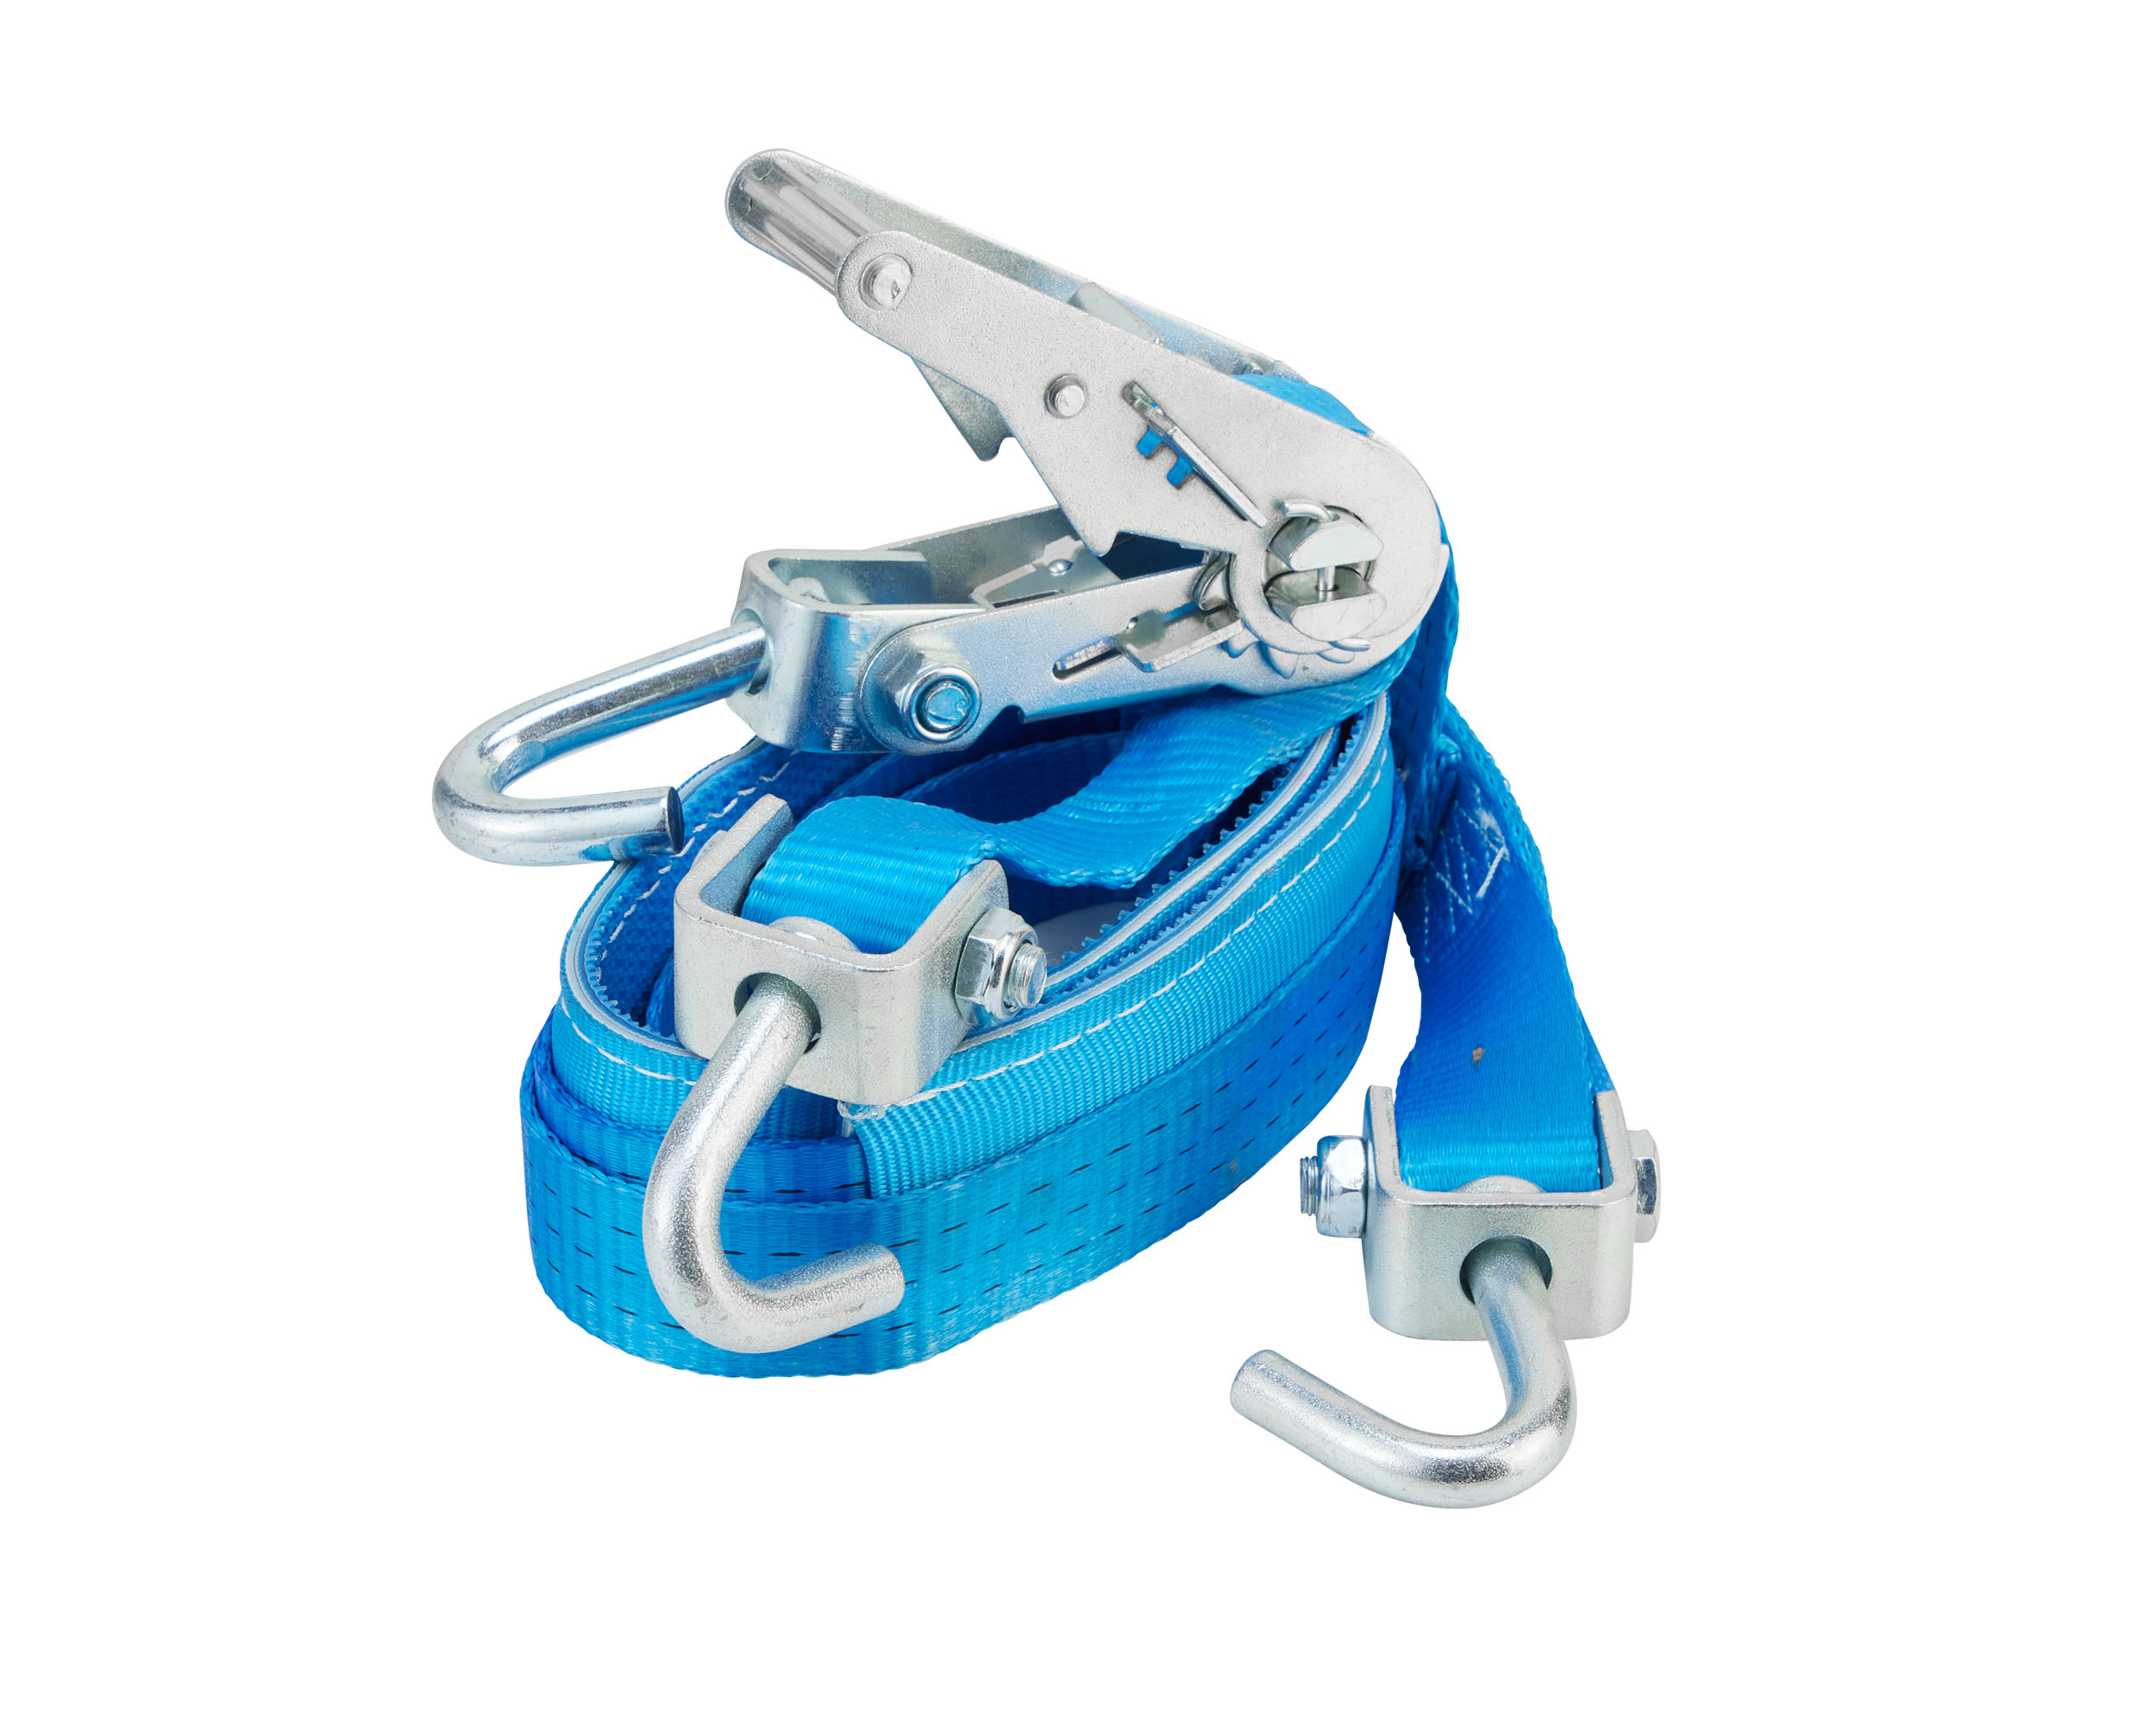 Lantelme Hunde Sicherheitsgurt Adapter XL extra breit und stark für Auto  Gurtadapter ausziehbar 60 bis 95 cm blau 6113